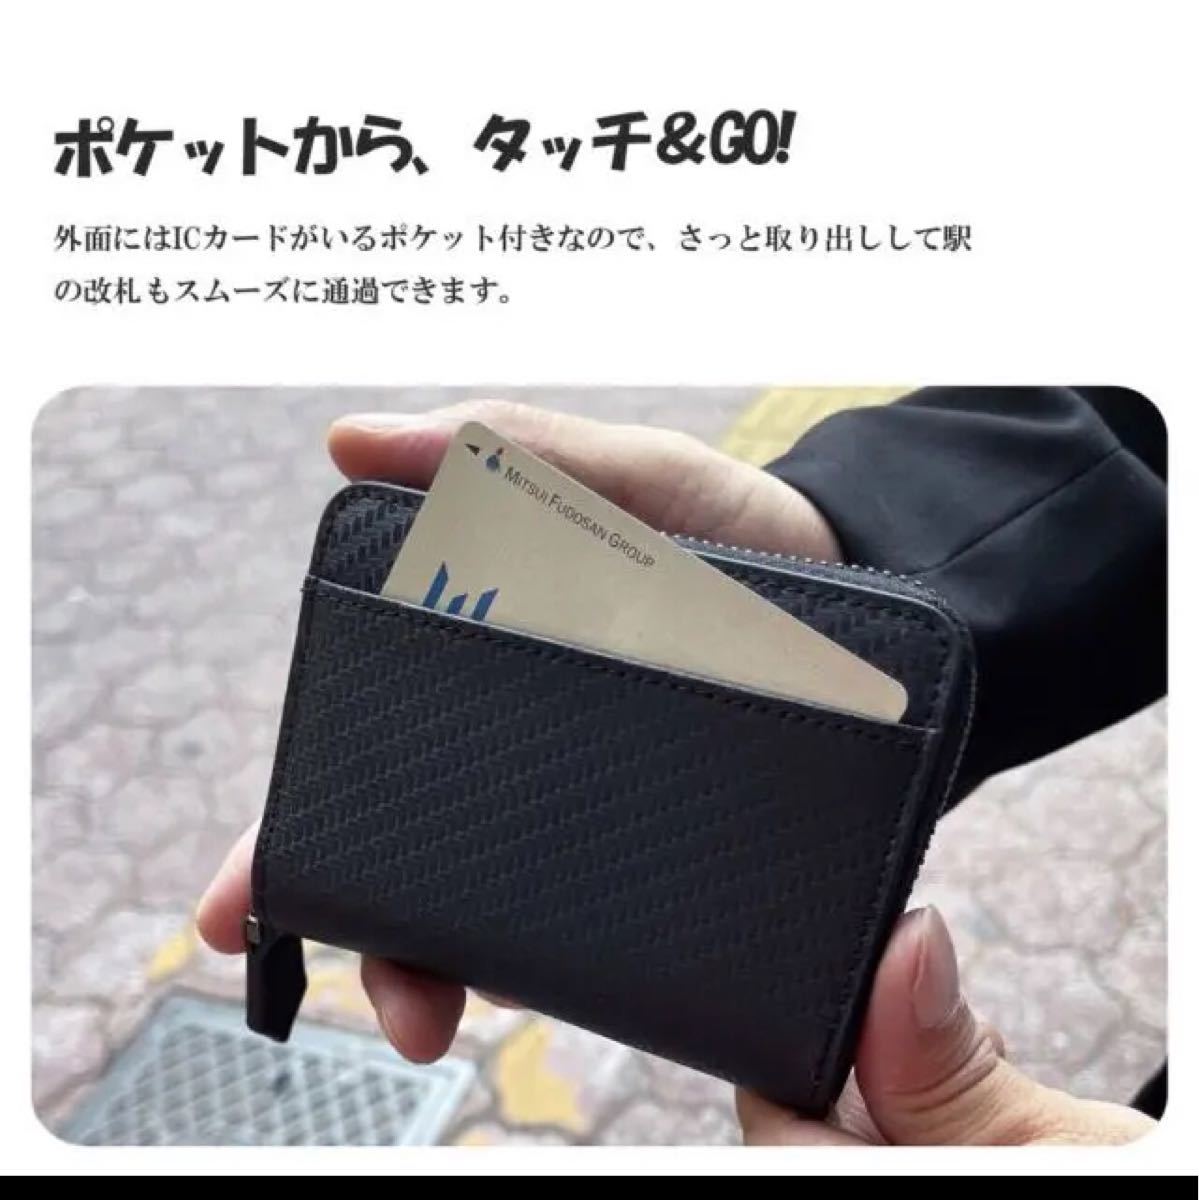 多機能小さい財布 コインケース 小銭入れ メンズ コンパクト カーボン レザー 財布メンズ 小銭入れ 財布